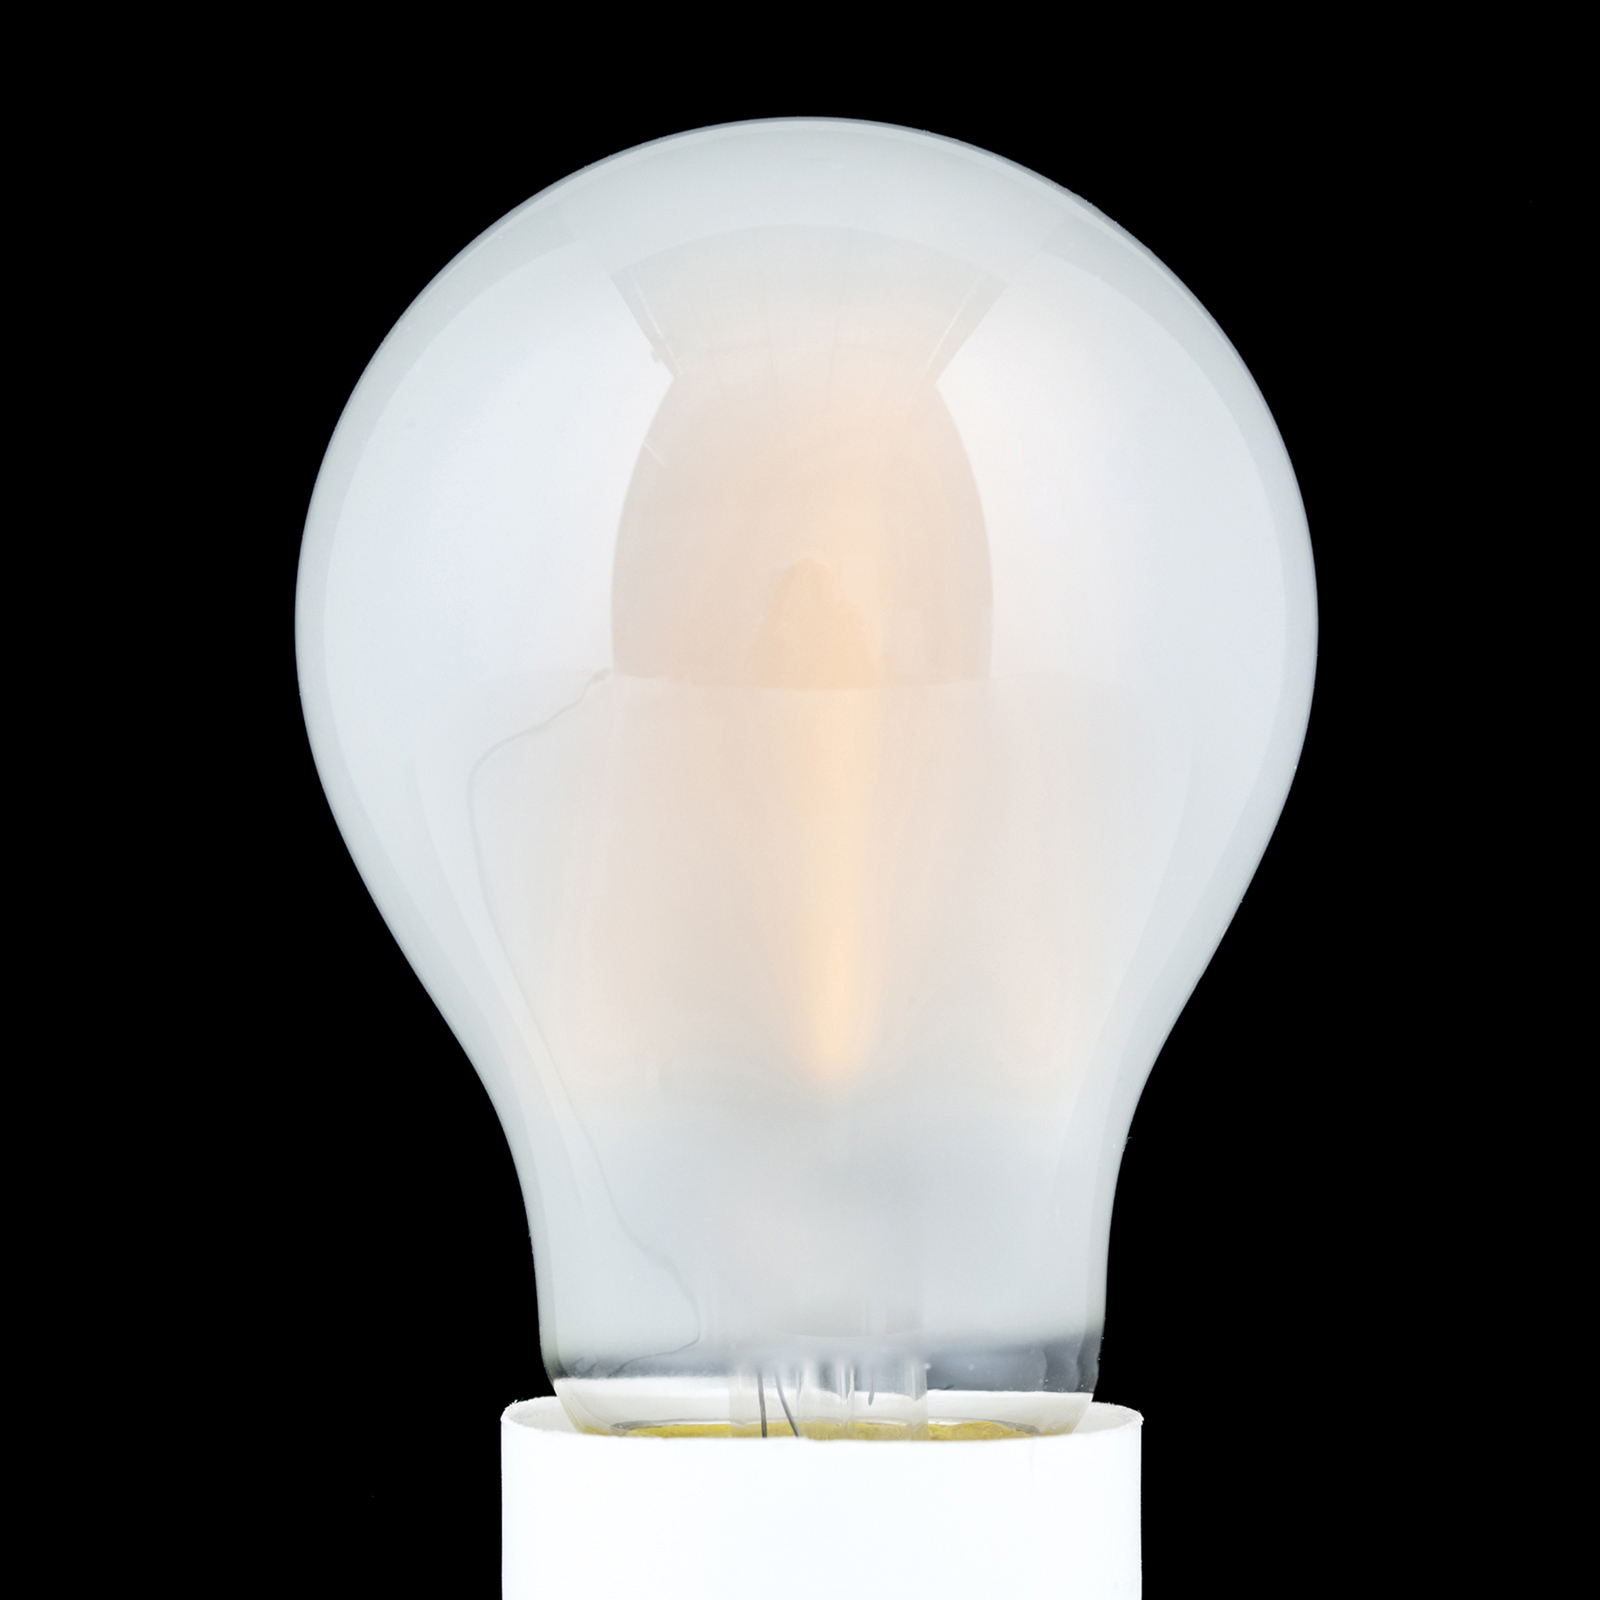 LED žiarovka E27 8W 2700K 980 lm matná stmieva